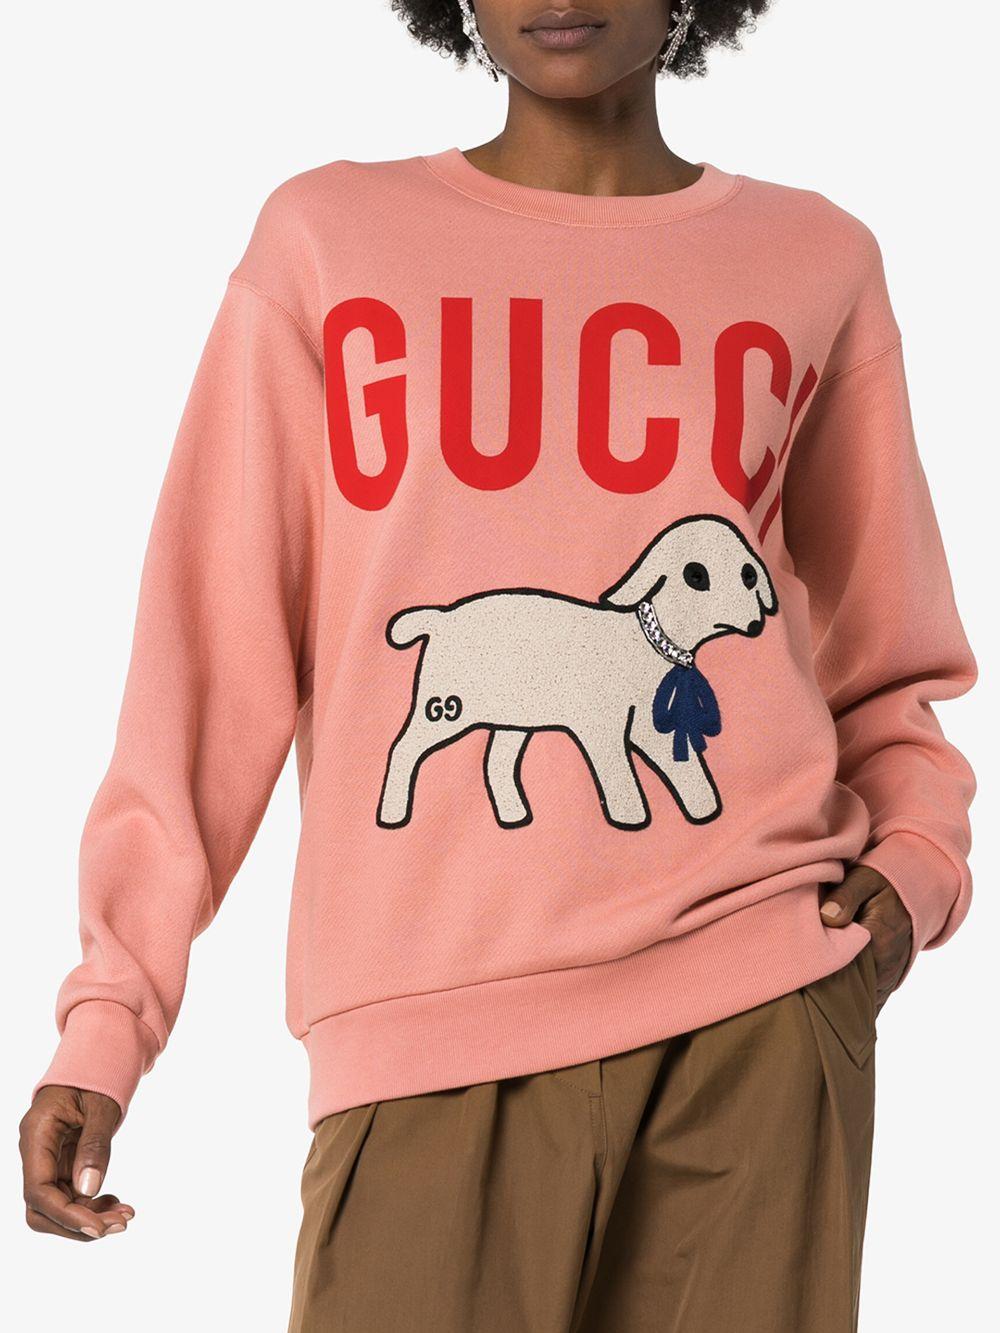 Interlocking G Dog Sweater in Multicoloured - Gucci